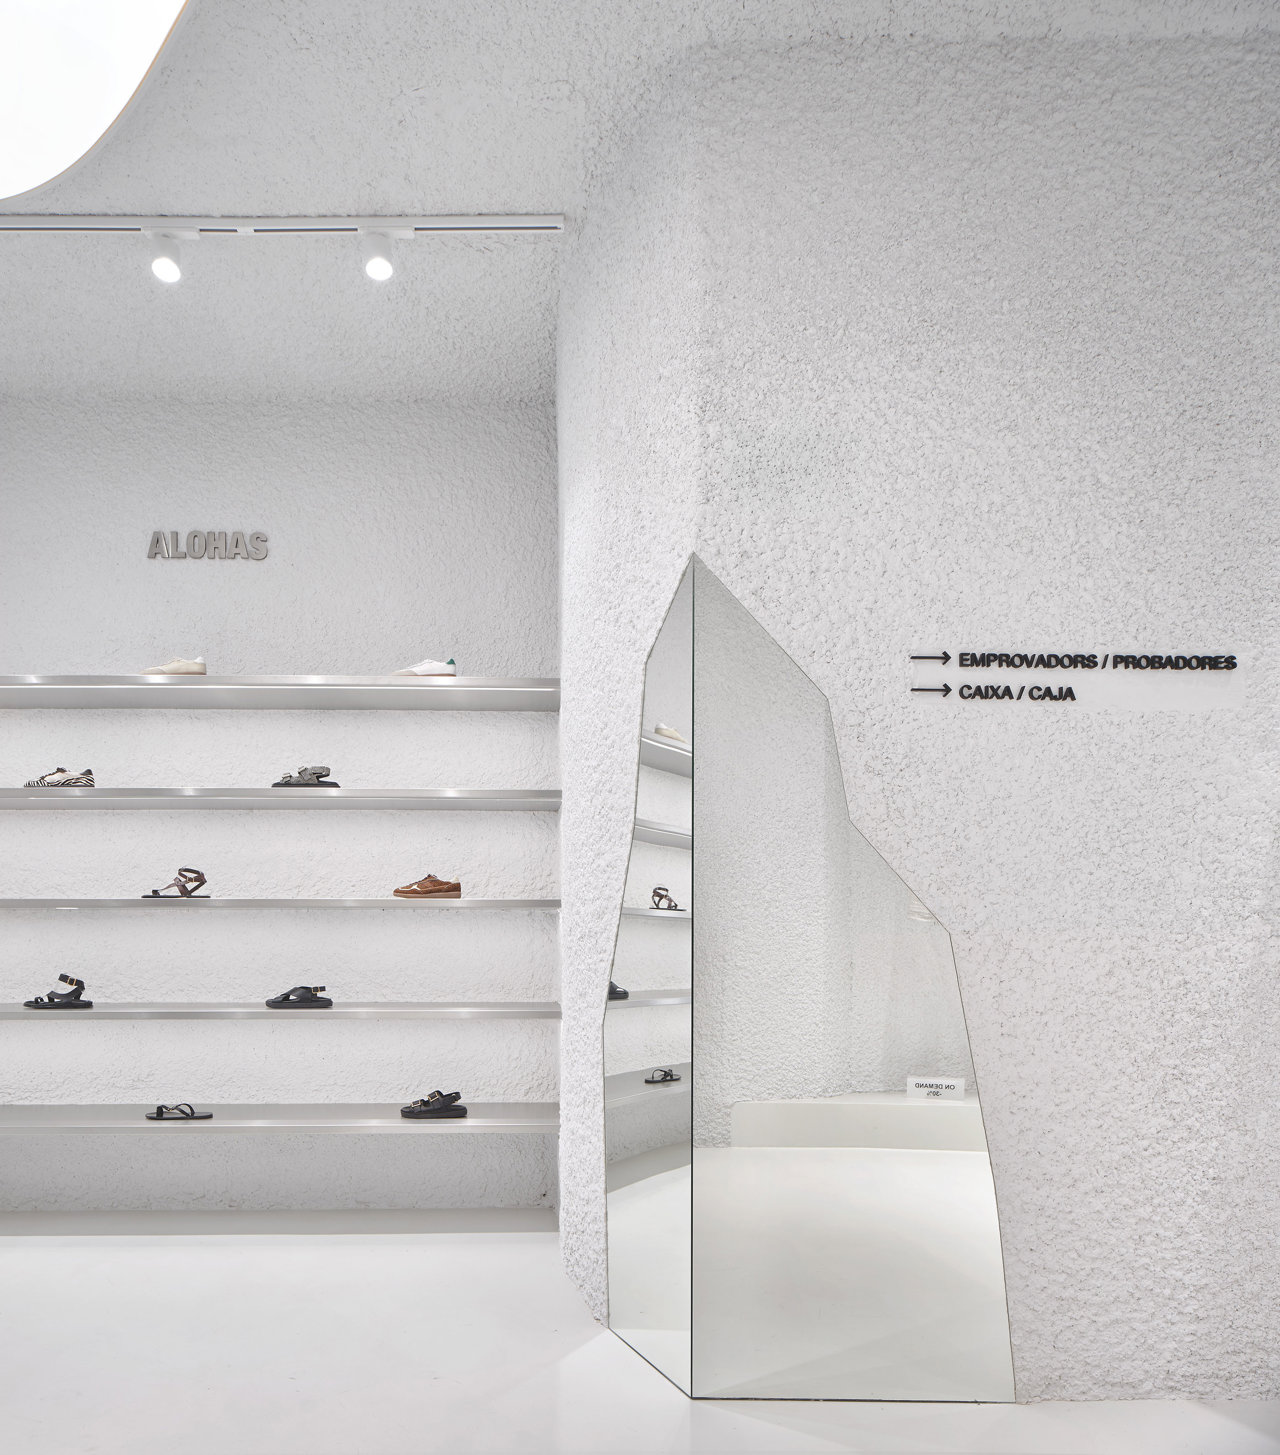 Paisaje agresivo y brutalista, así es el diseño de la tienda de ALOHAS en Barcelona.